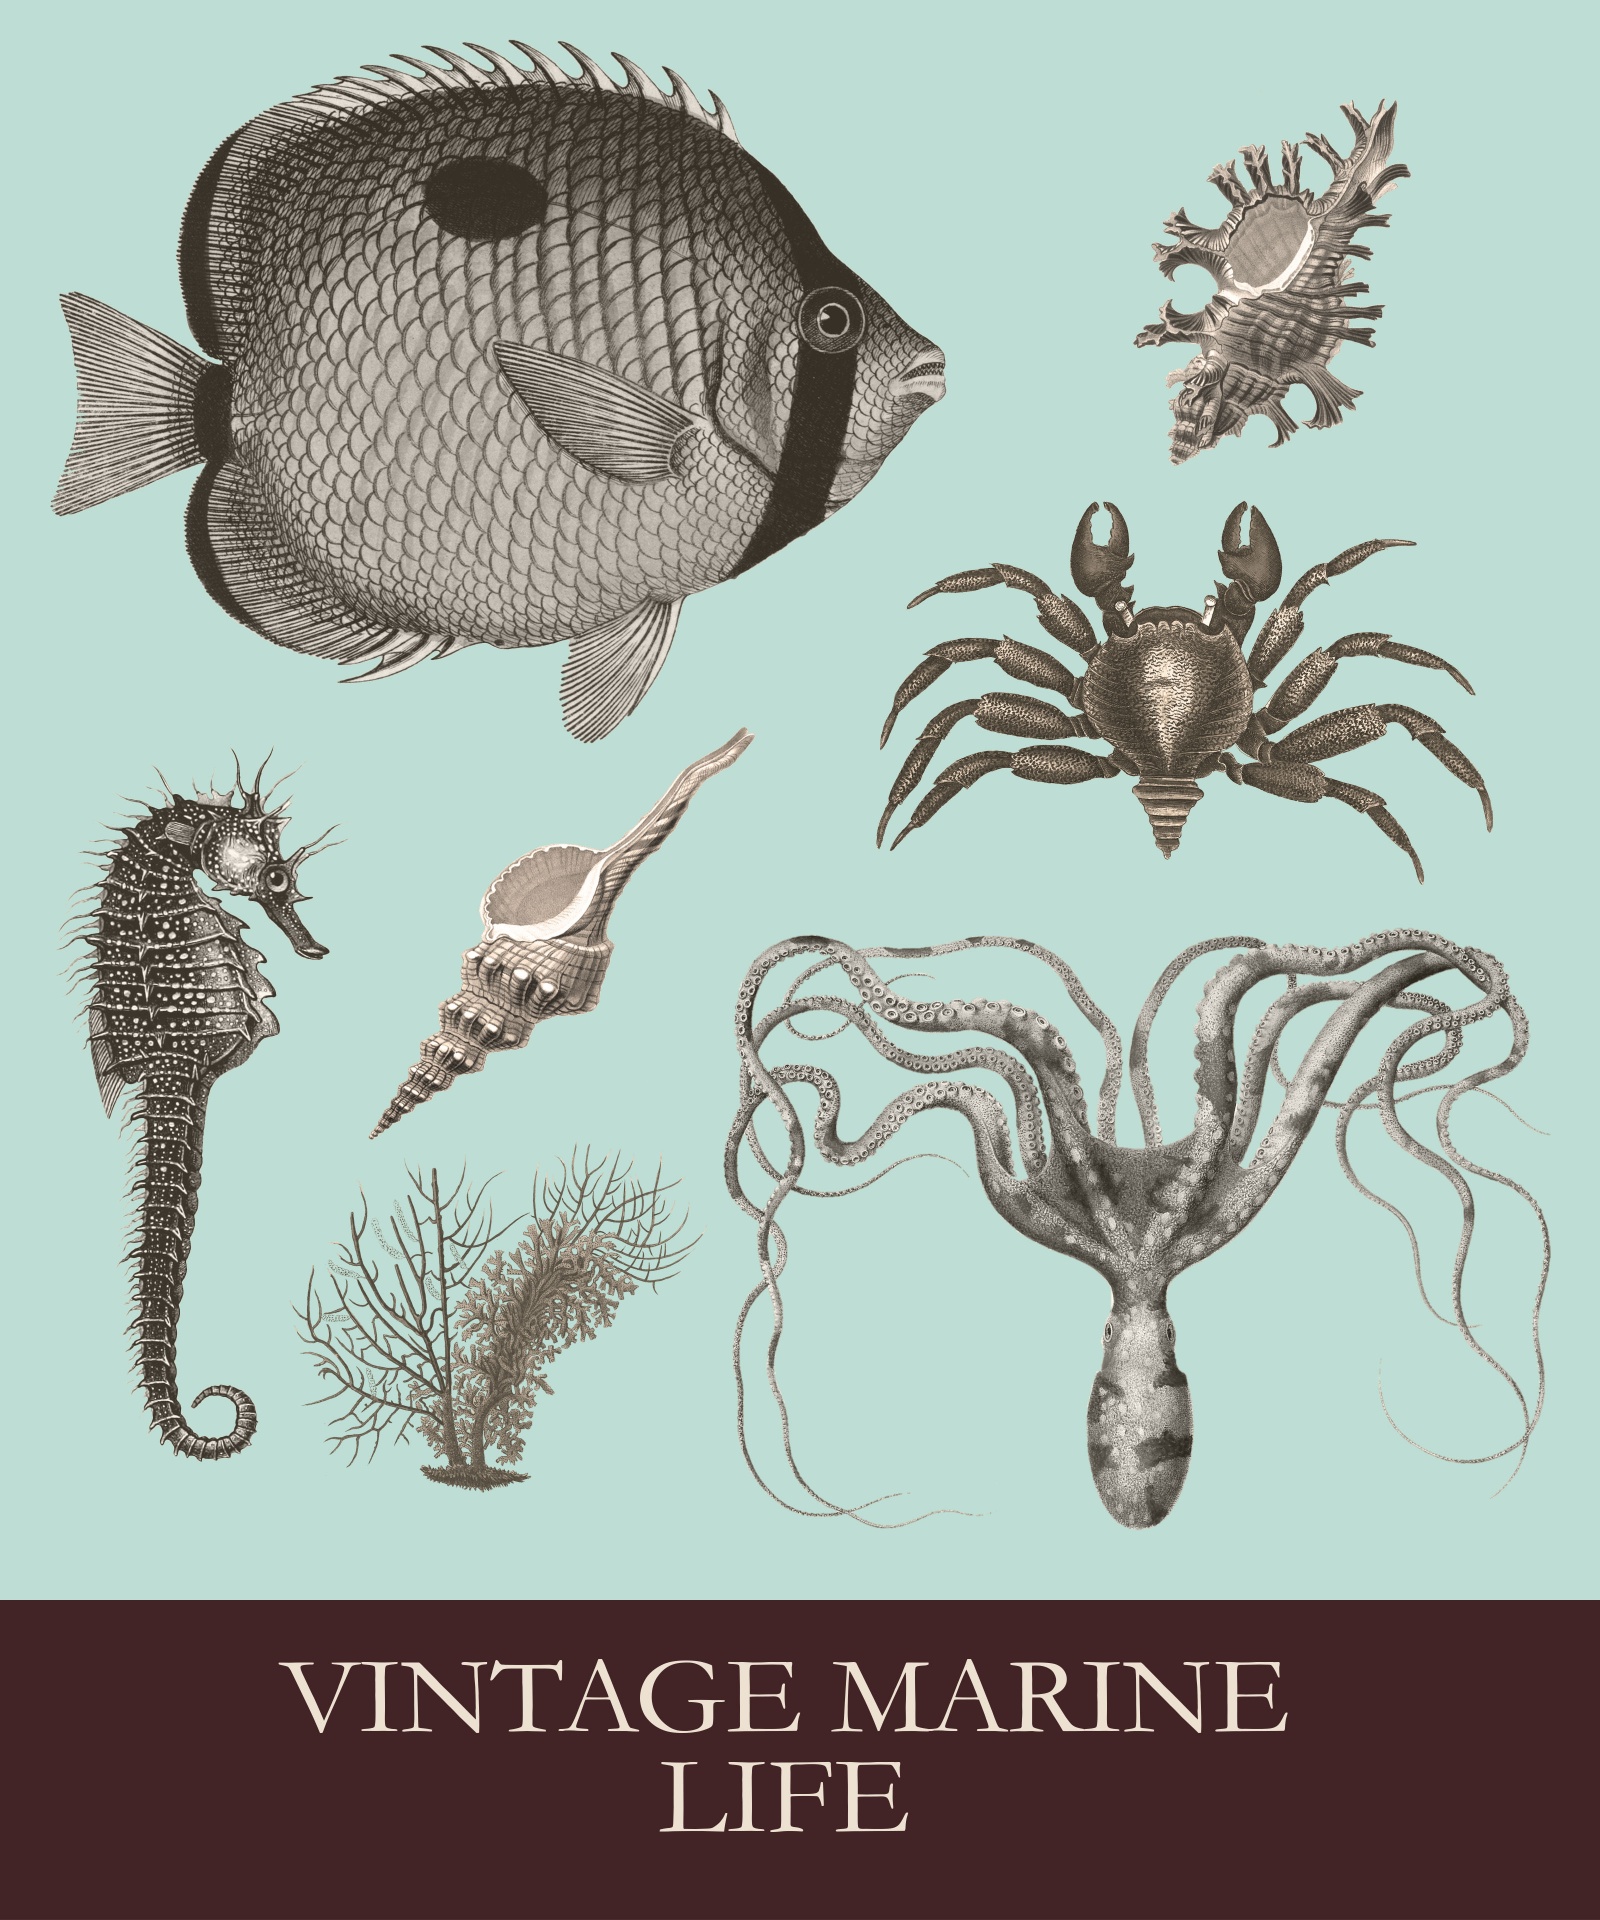 Vintage Sea Creatures Set Free Stock Photo - Public Domain Pictures